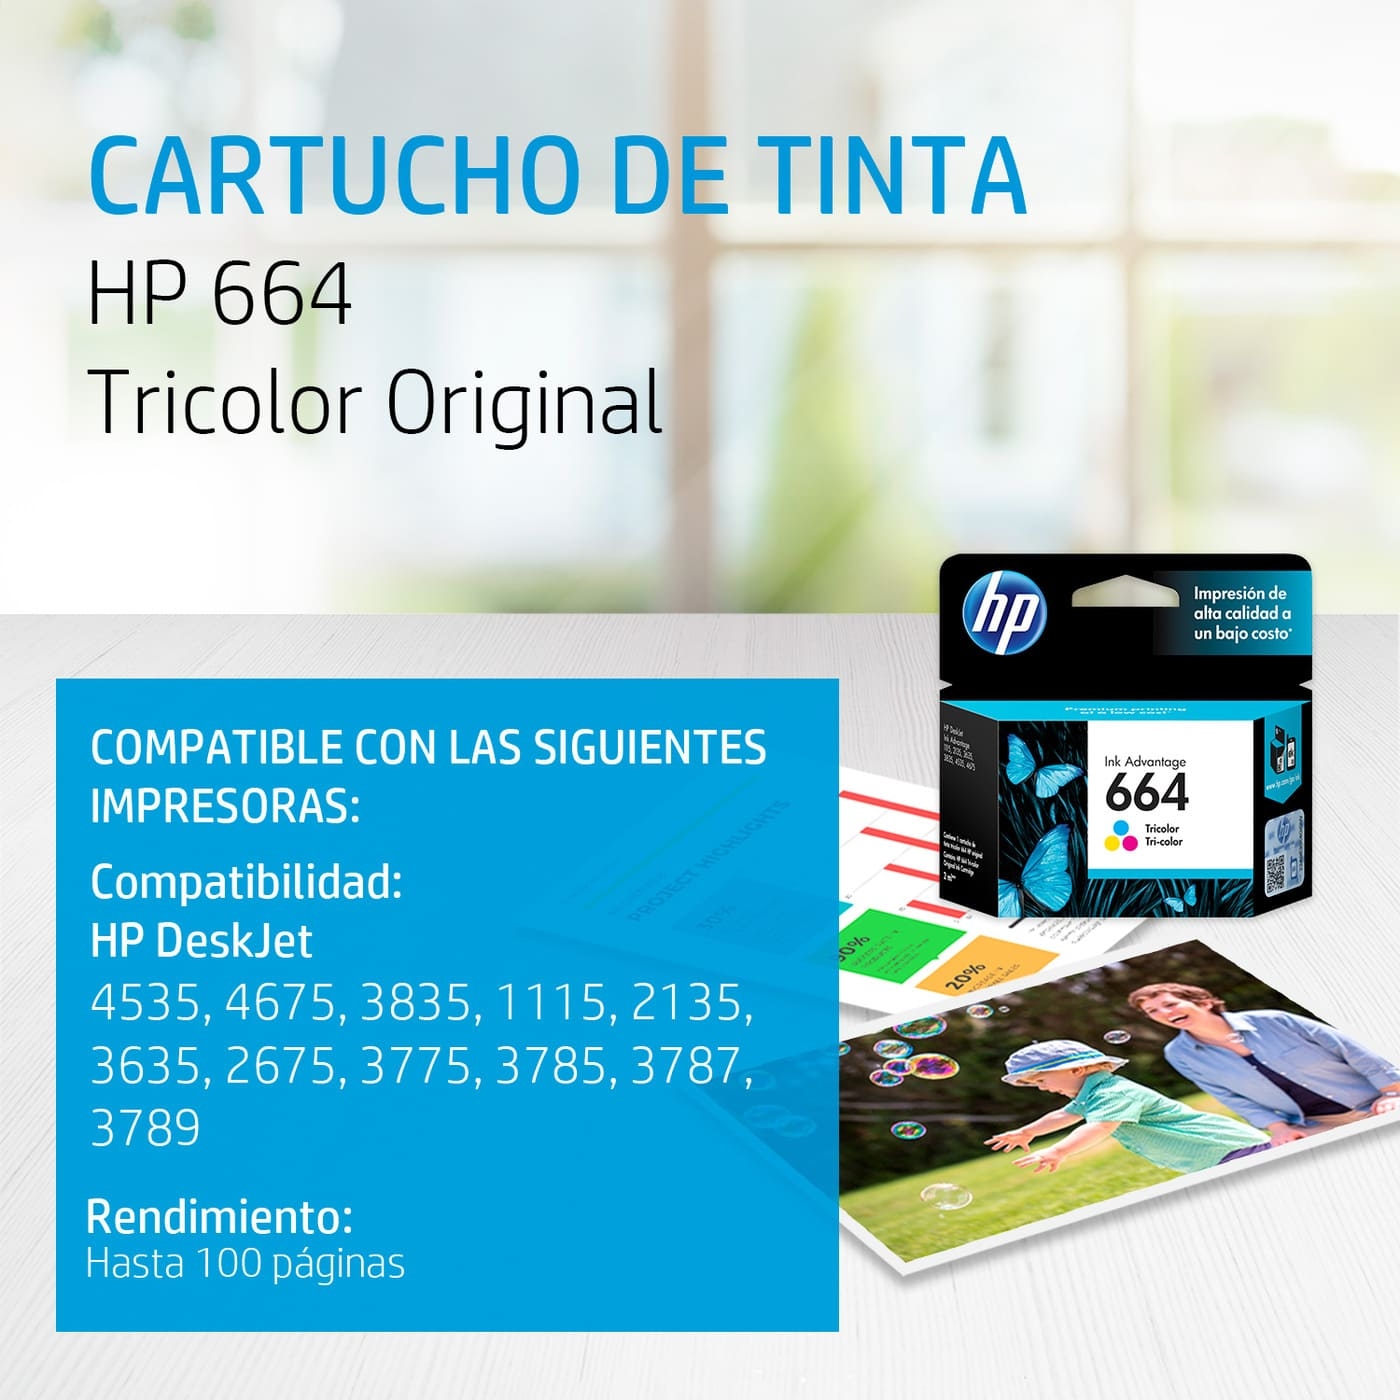 Cartucho de Tinta HP 664 Tricolor